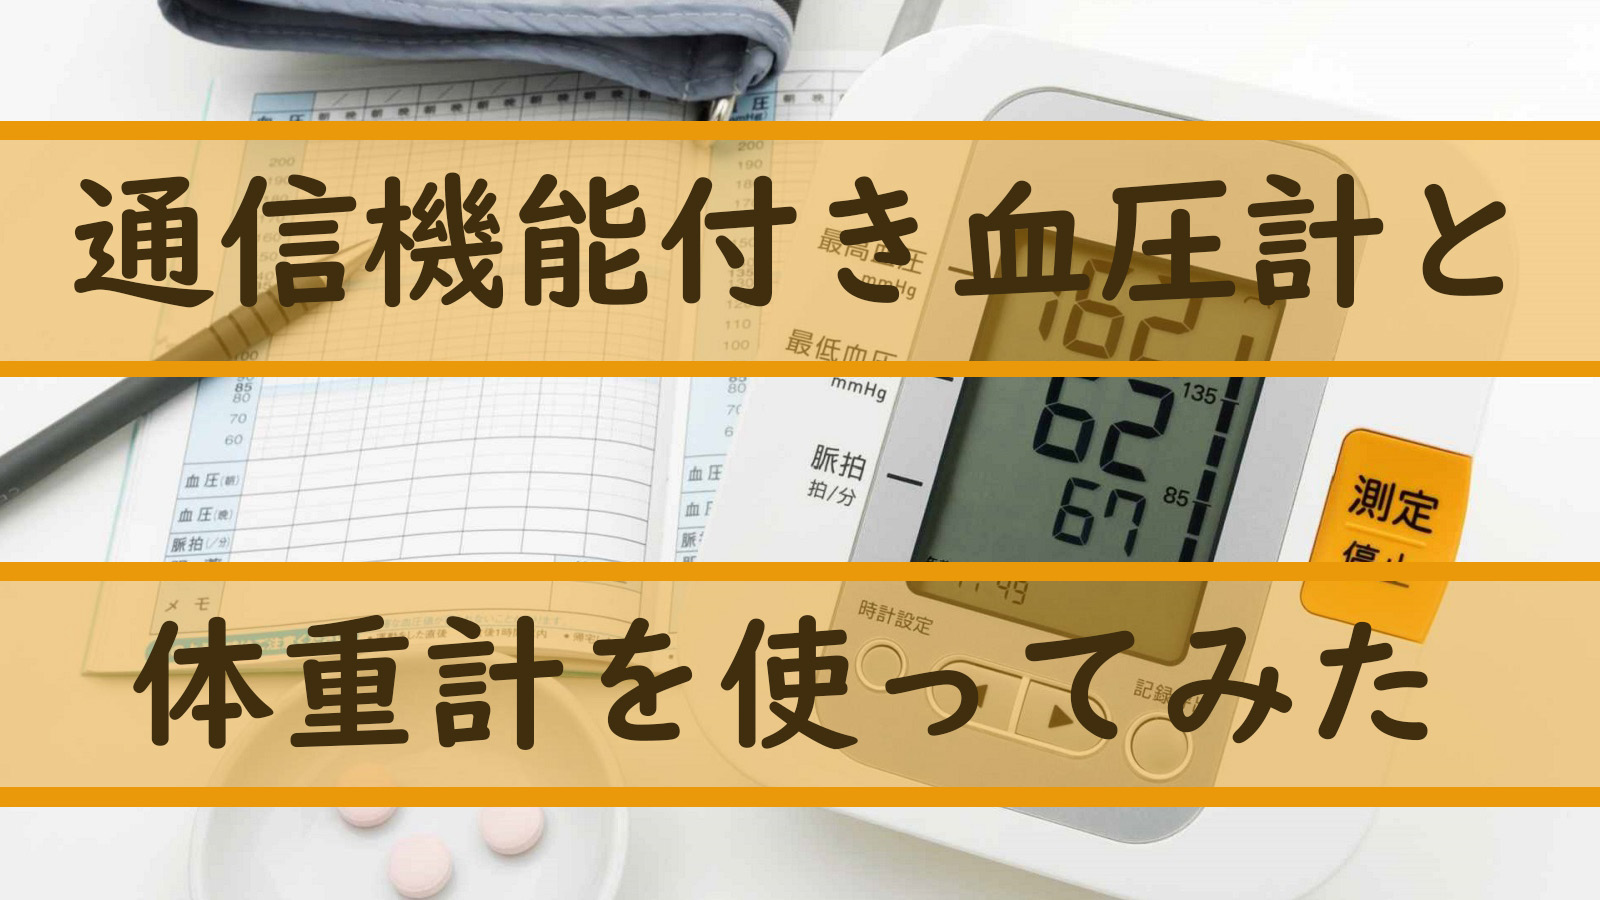 血圧計と体重計